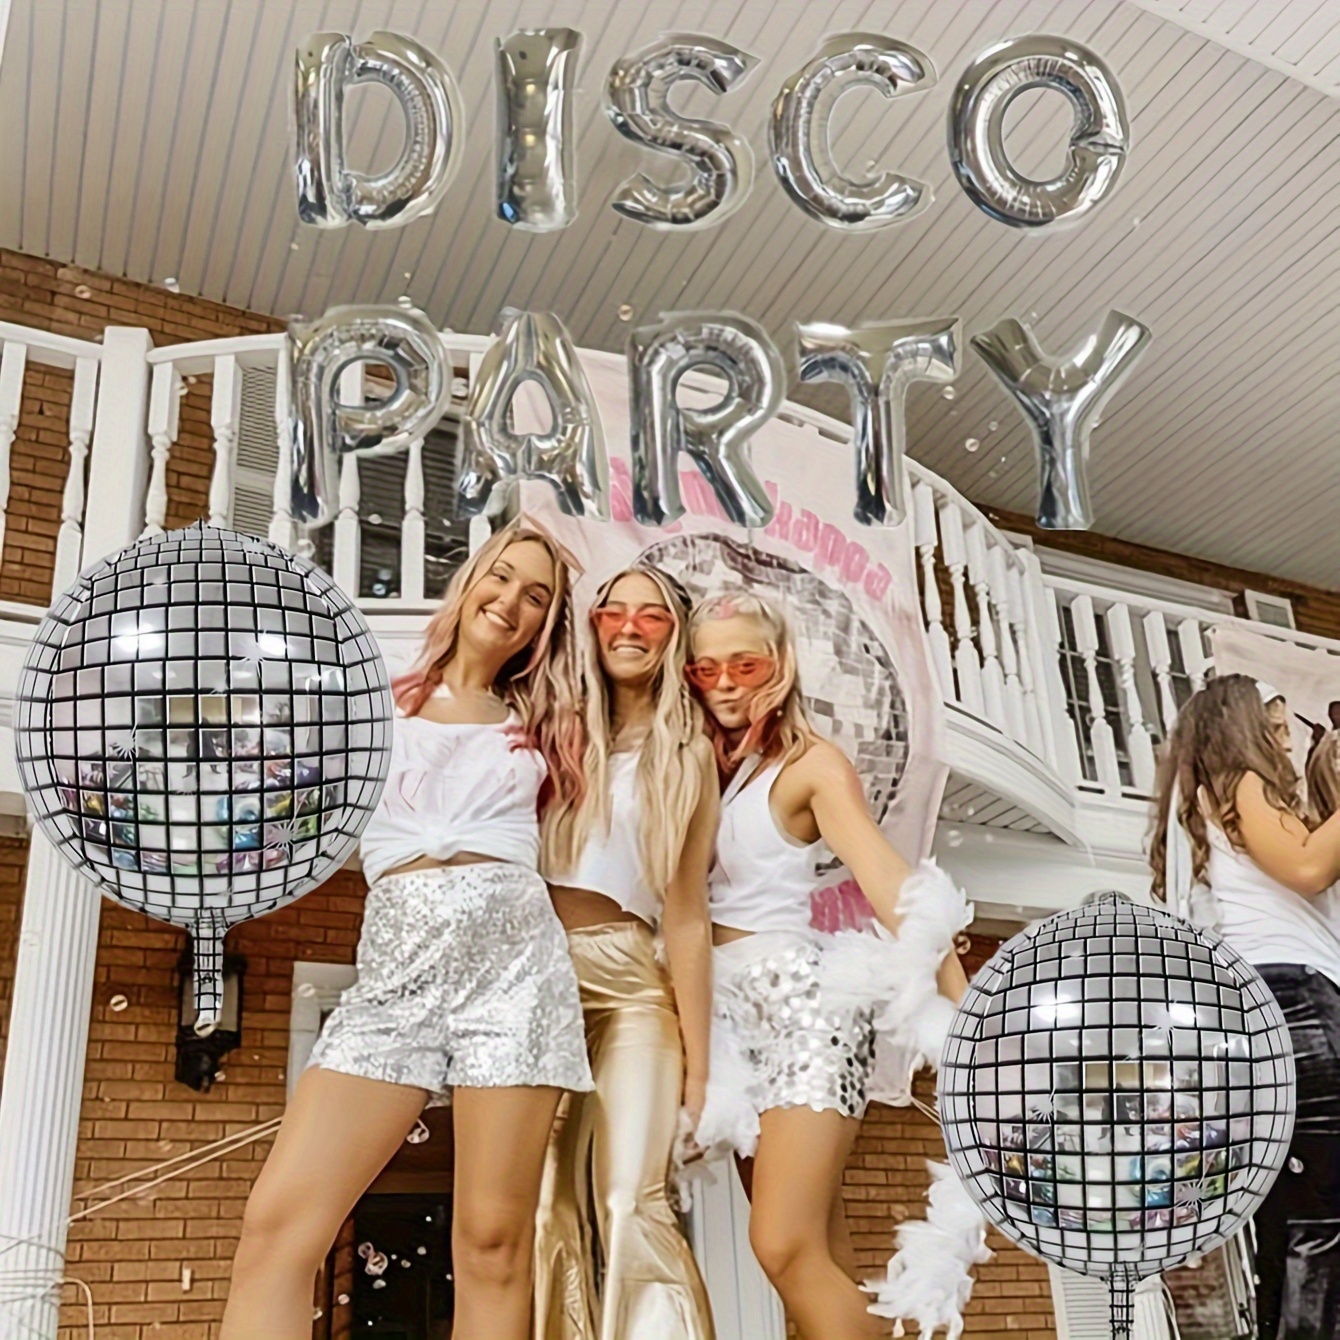 Ballons Disco Fever 23cm 6pcs - Partywinkel